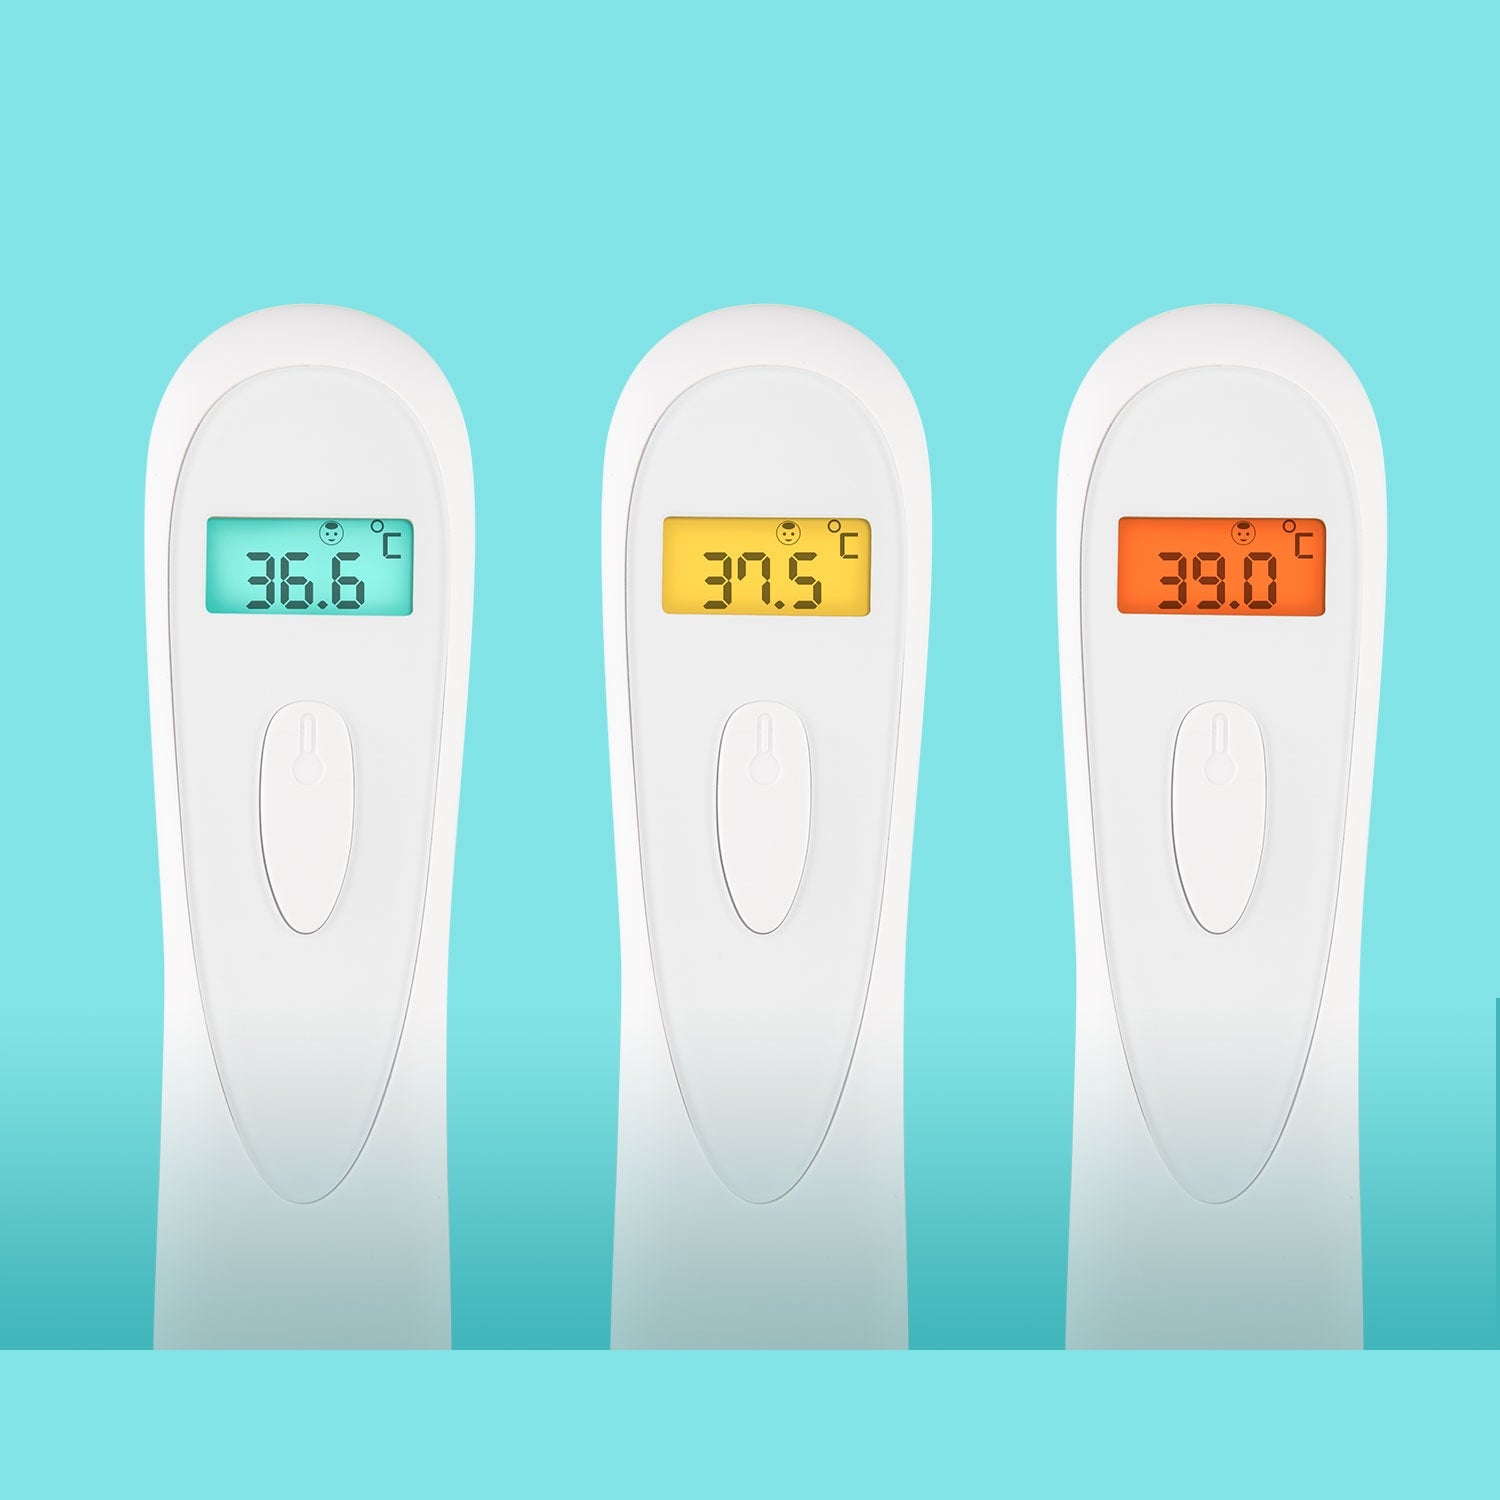 Canpol Babies: bezdotykowy termometr na podczerwień EasyStart